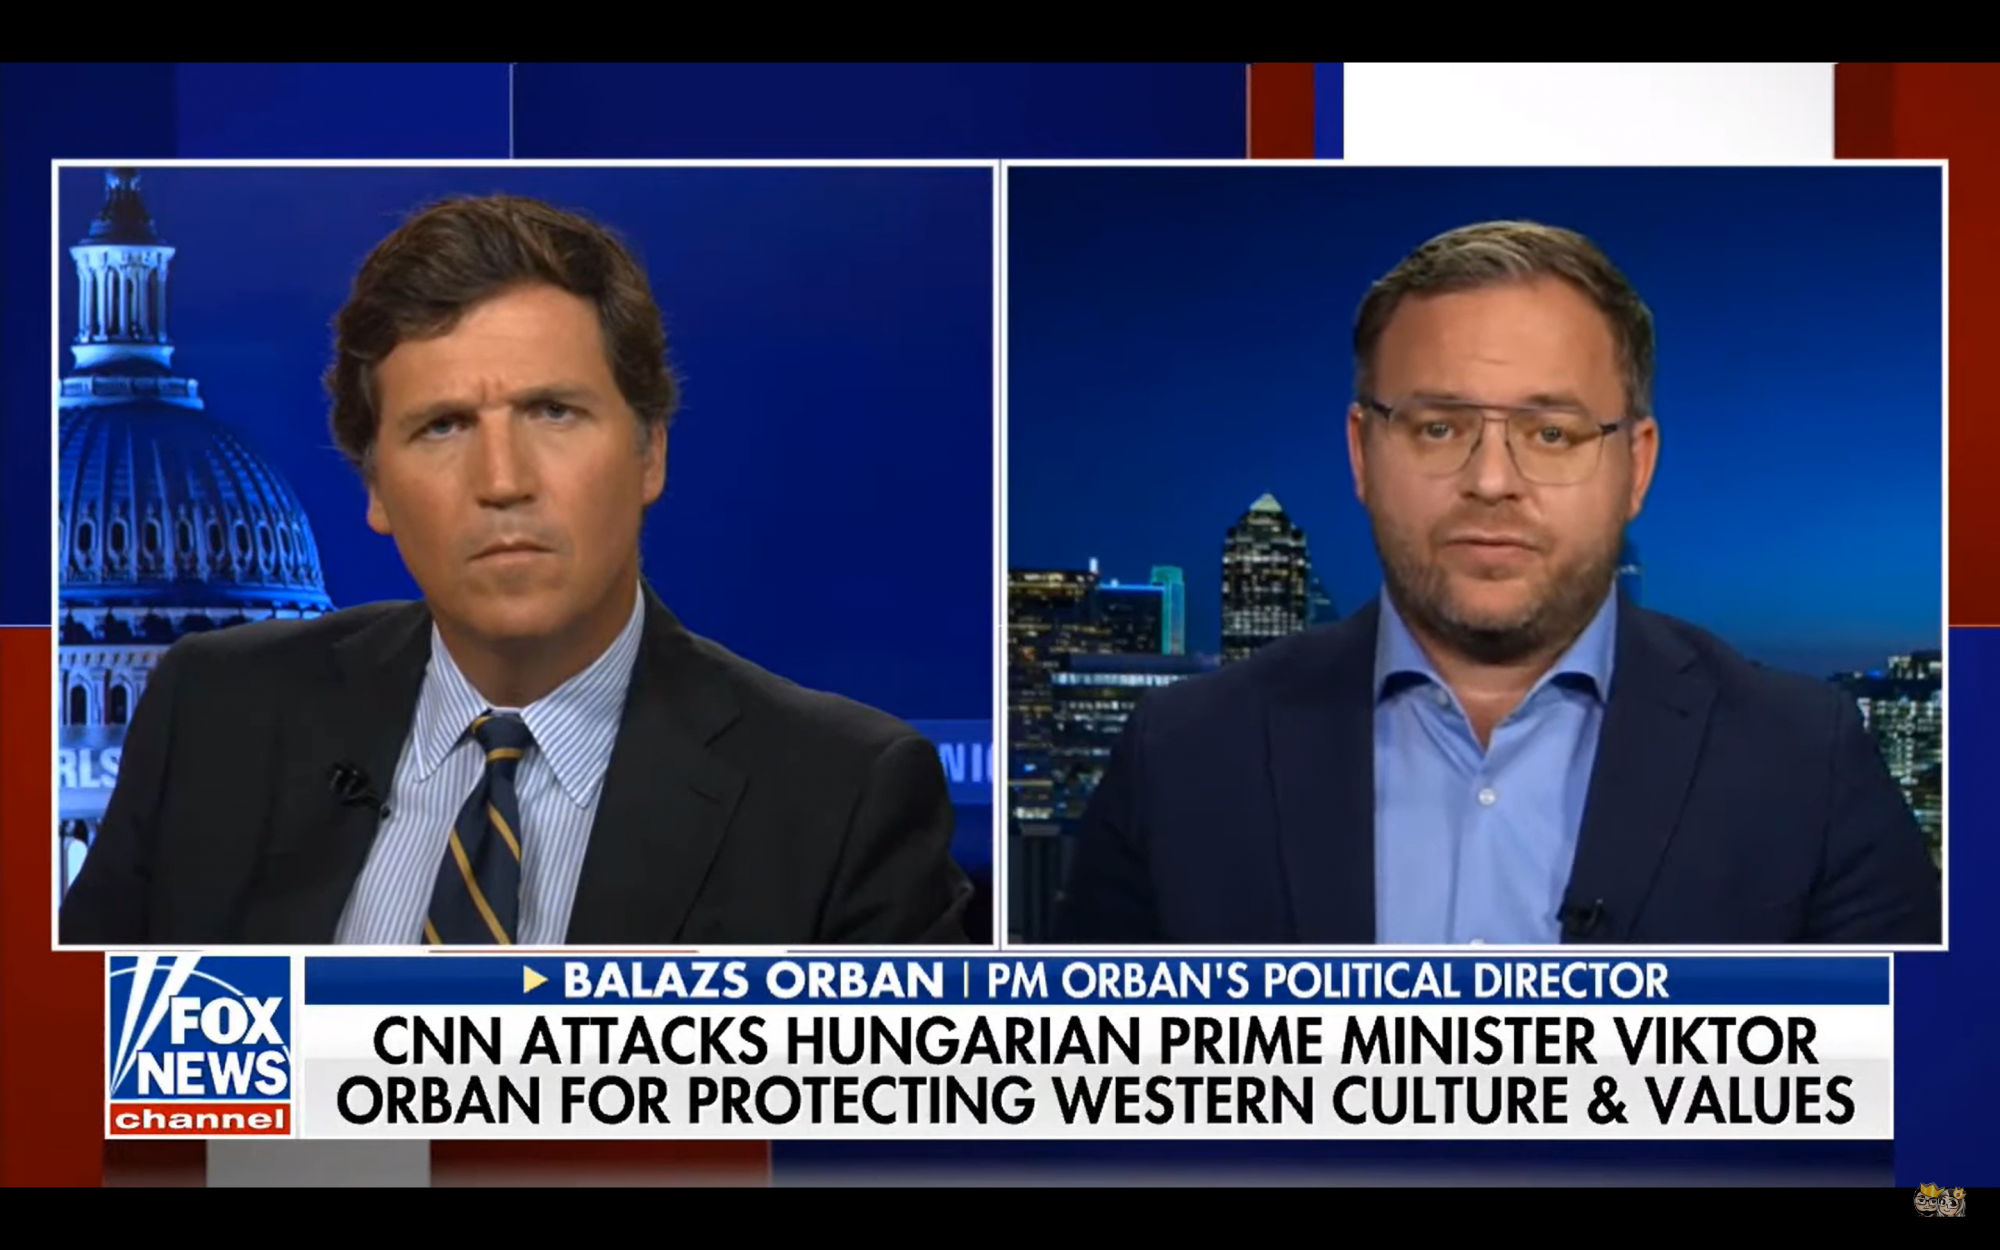 Tucker Carlson bocsánatot kért Orbán Balázstól az amerikai média nevében